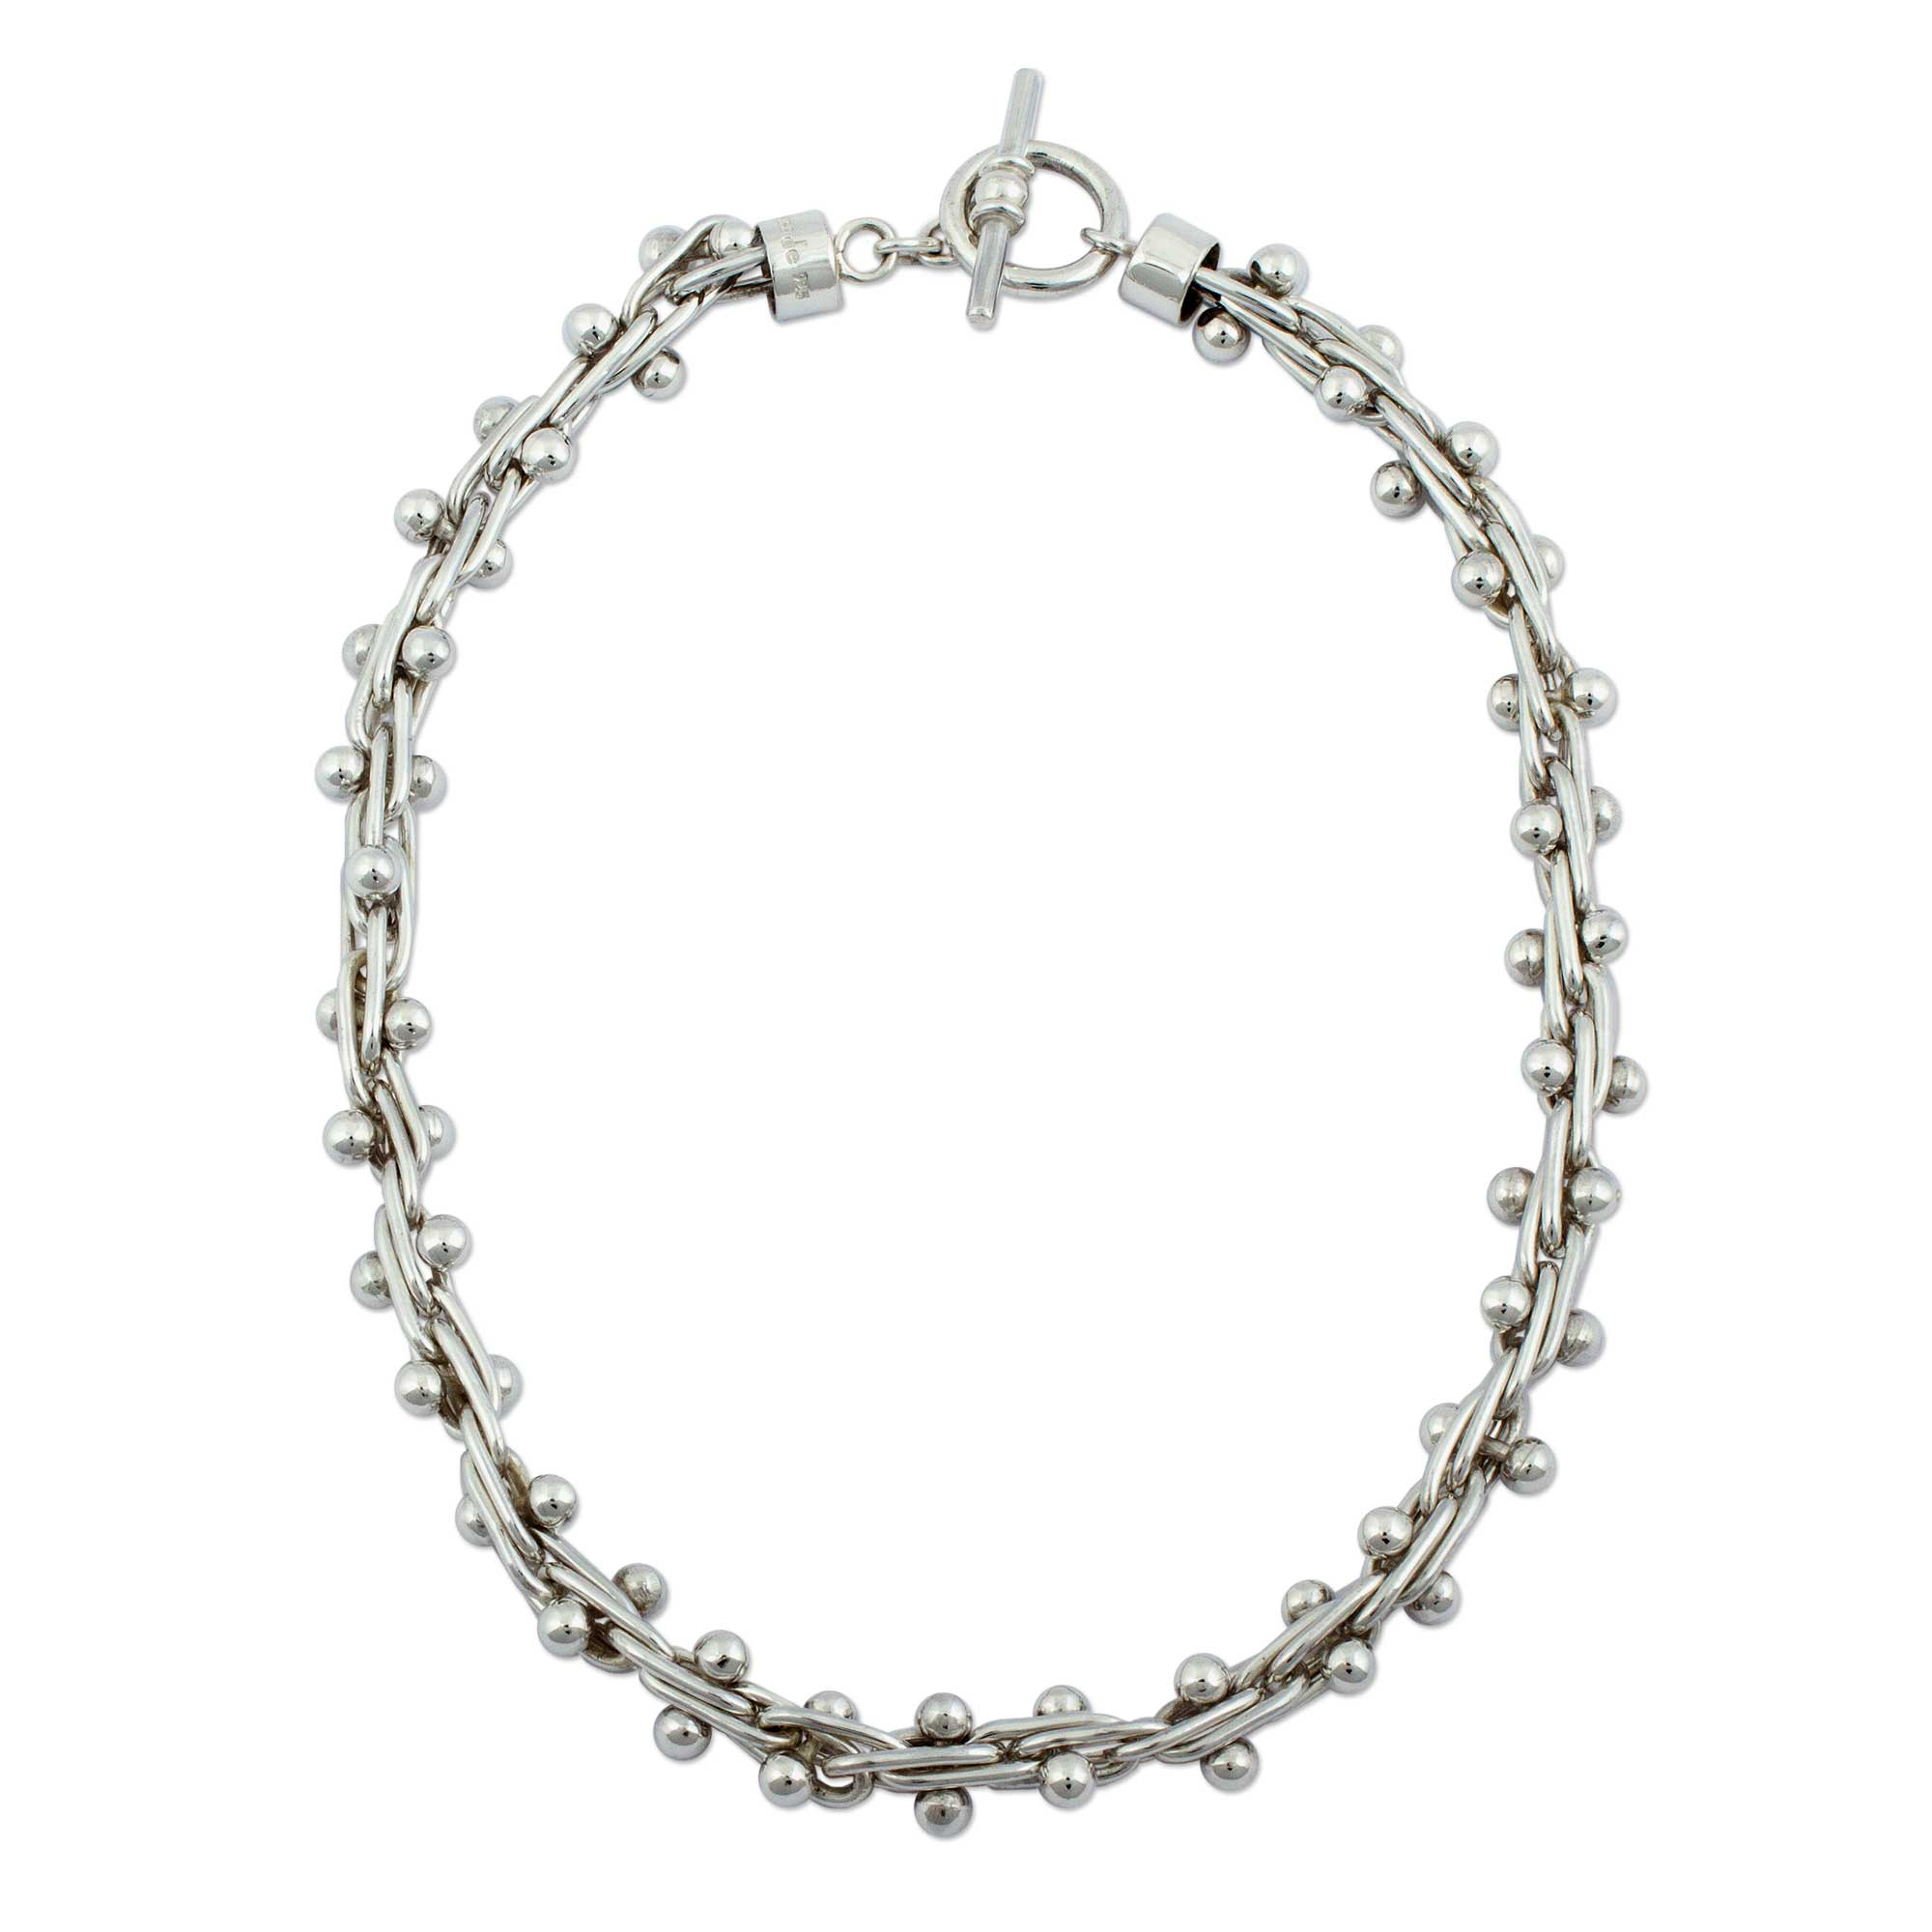 Unique Mexican Taxco Silver Choker Necklace - Charisma | NOVICA